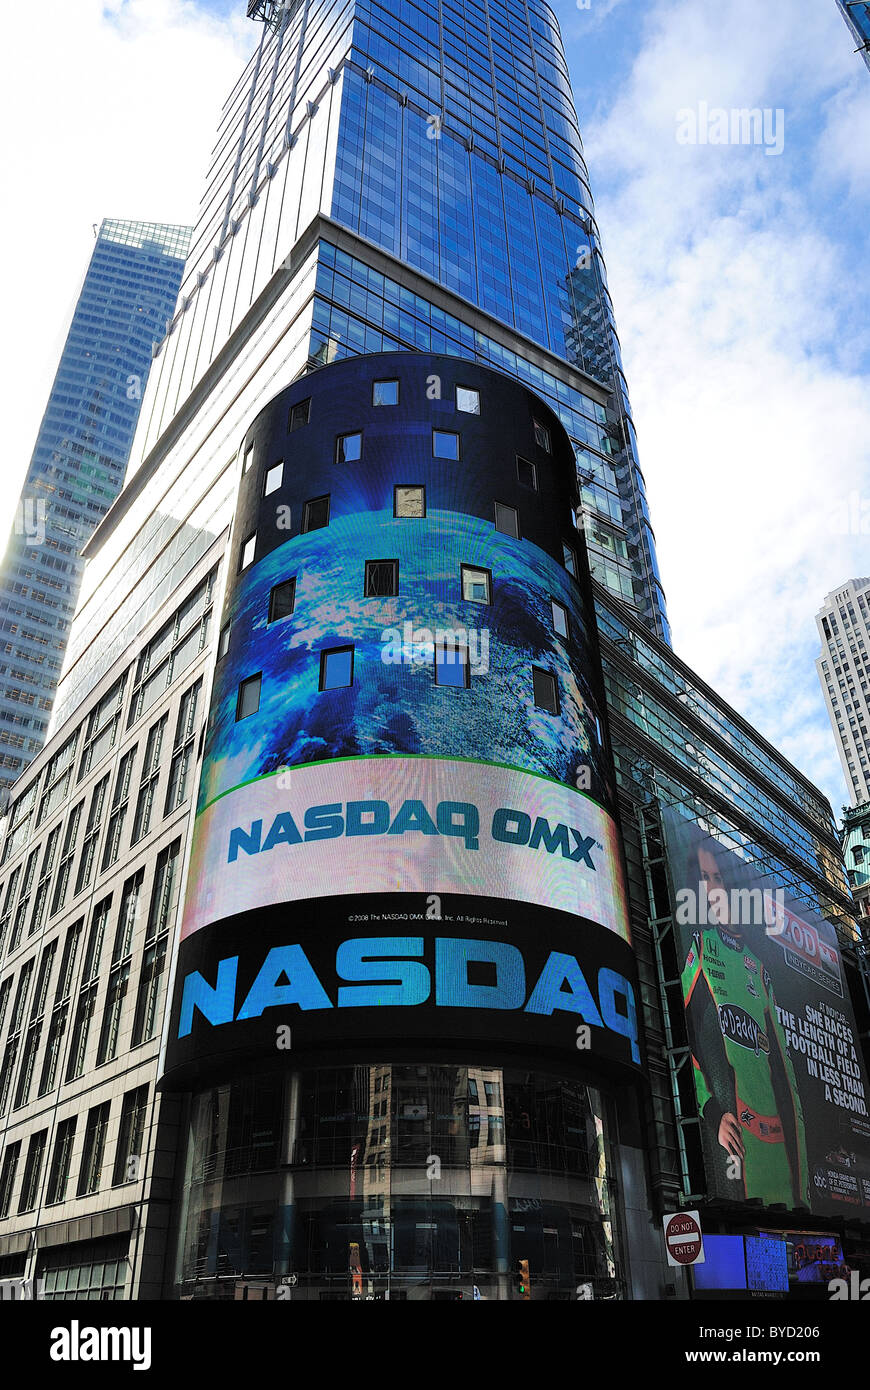 Le panneau électronique NASDAQ à Times Square. La ville de New York. 18 avril, 2010. Banque D'Images